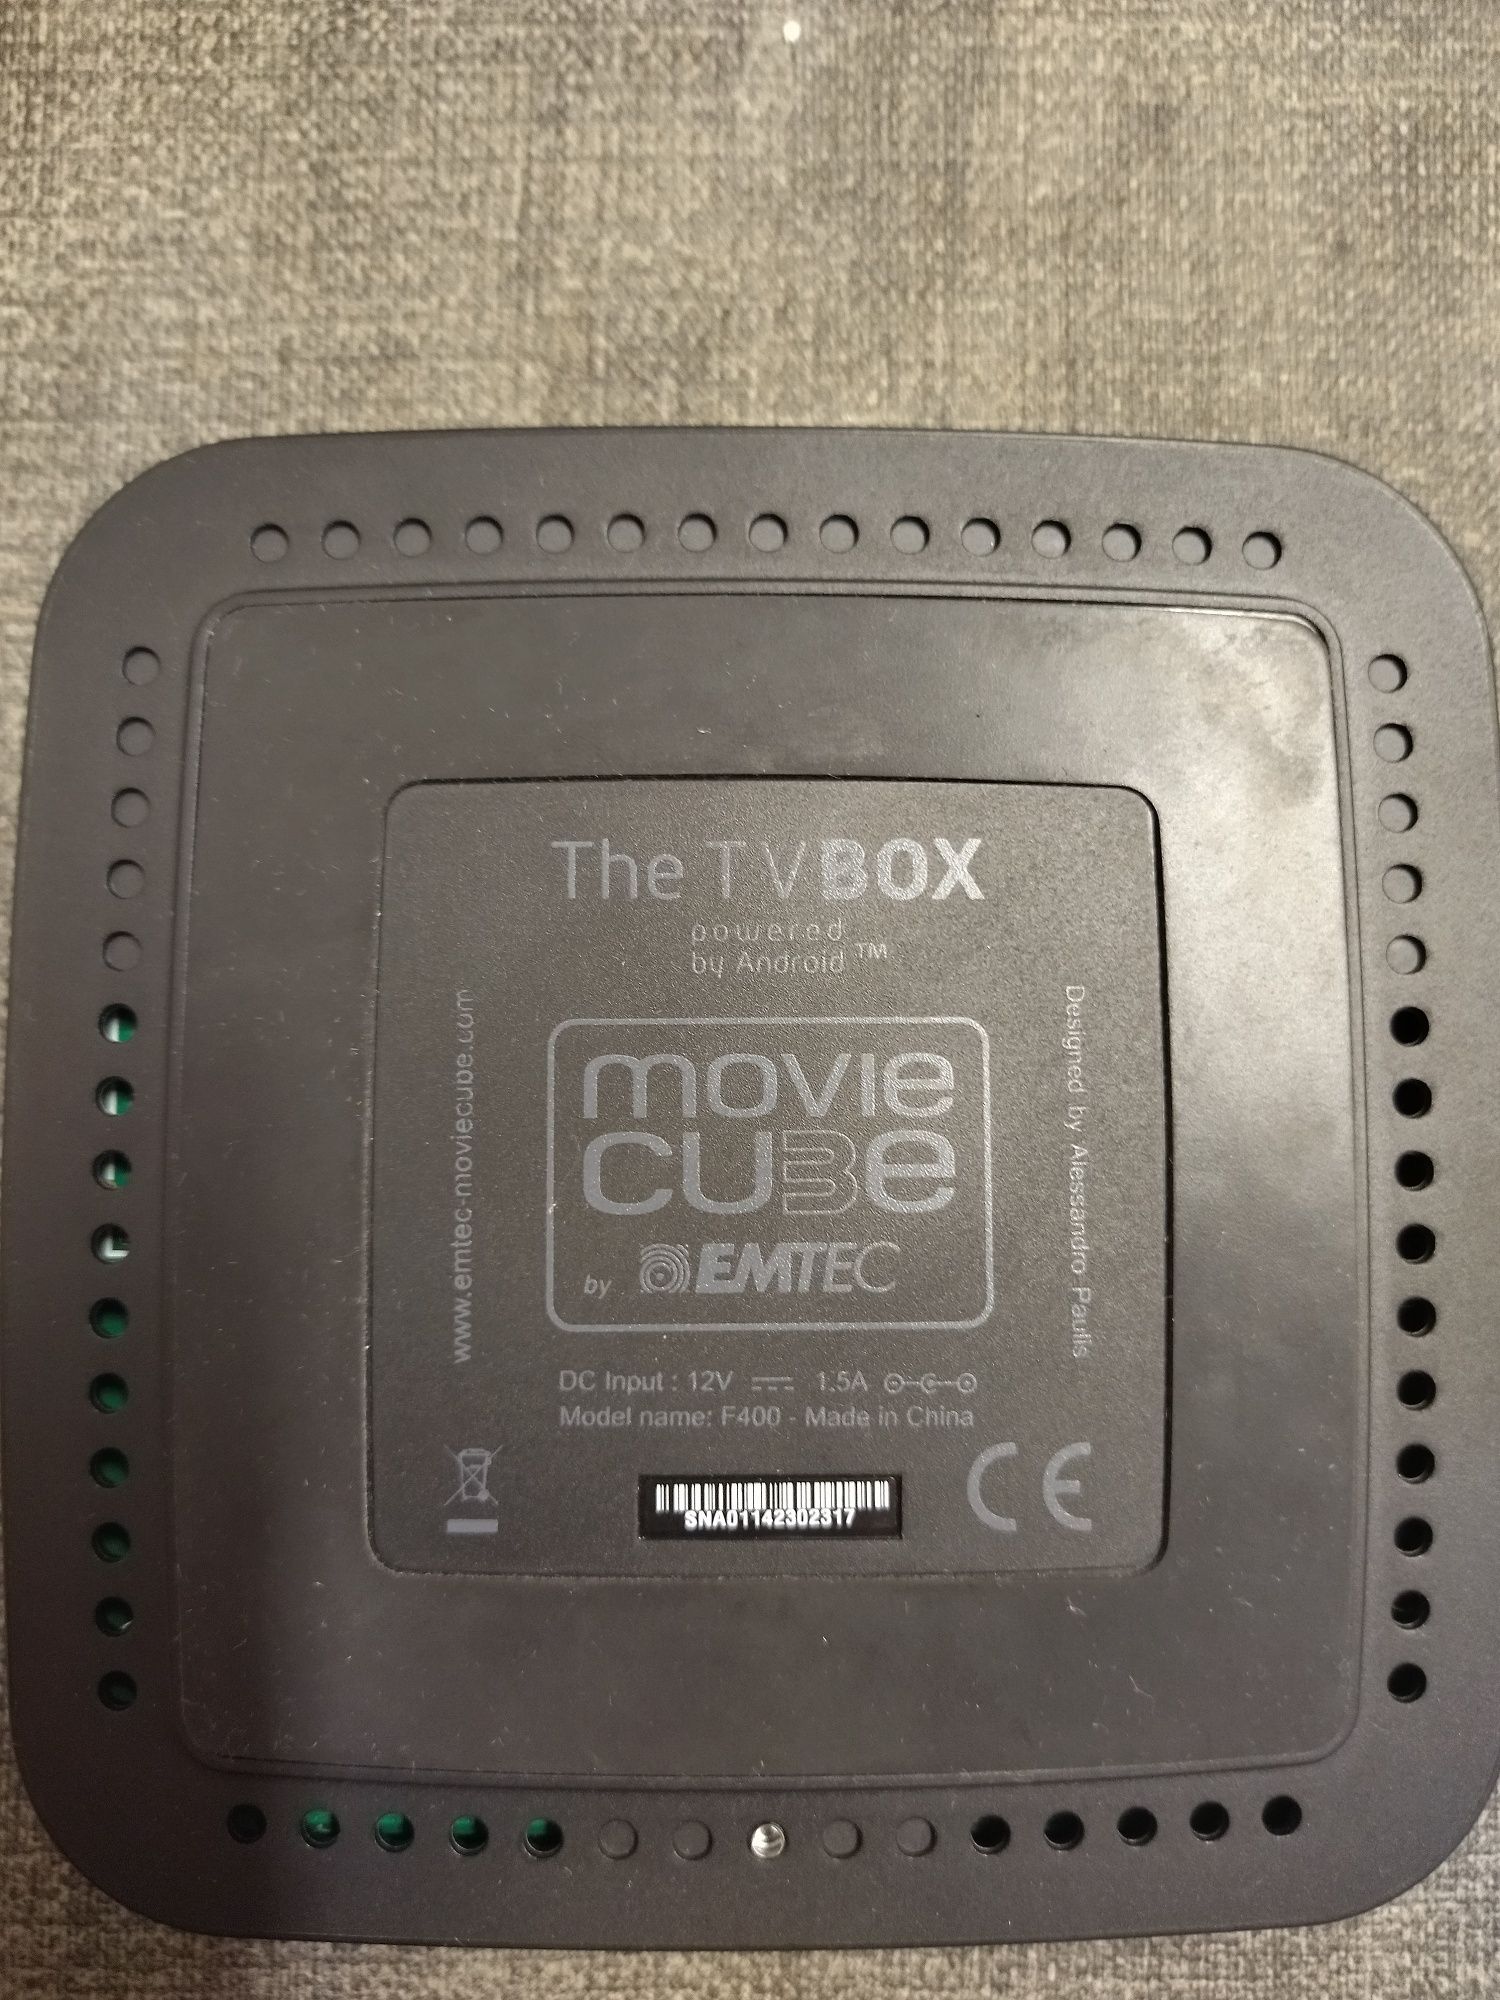 Box Emtec Movie Cube